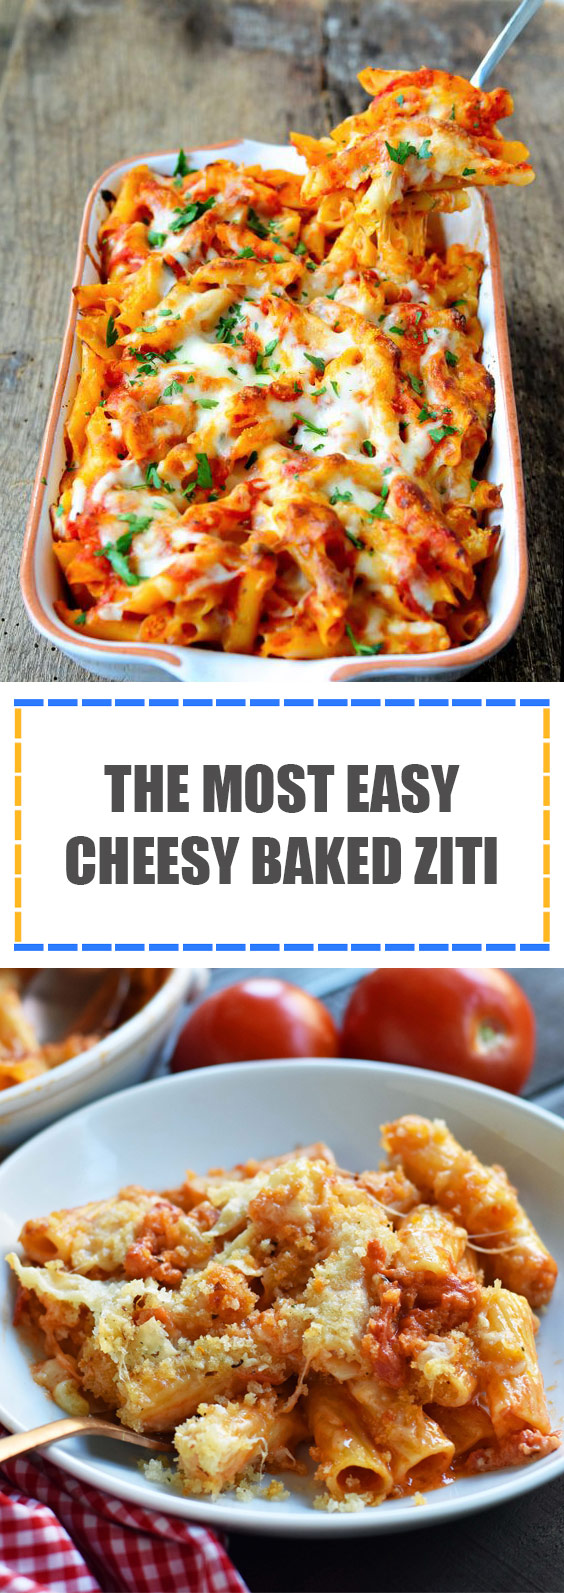 The Most Easy Cheesy Baked Ziti